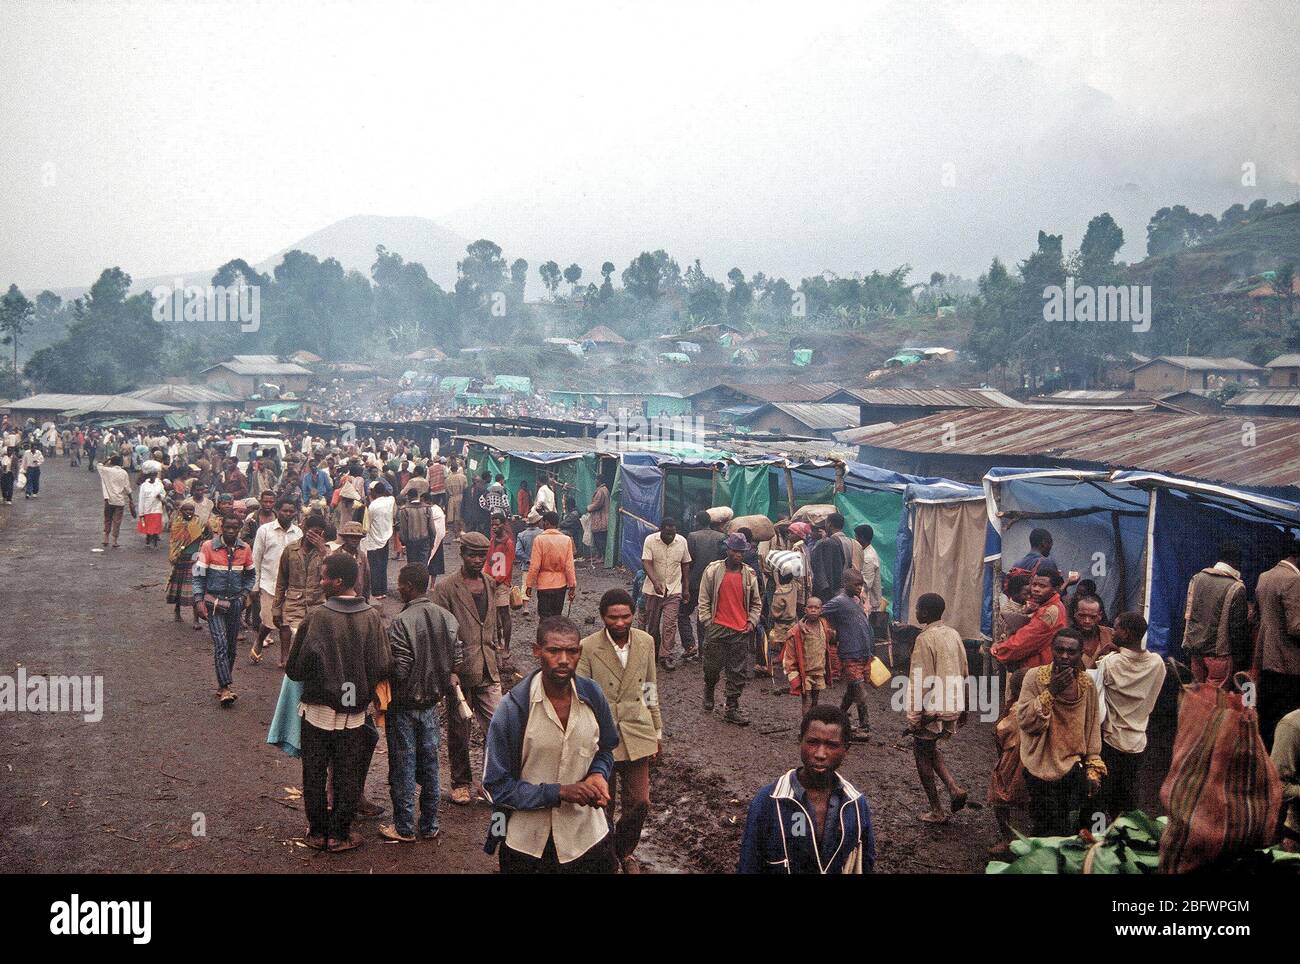 Zaïre 1994 - une vue sur le camp de réfugiés de Kibumba montrant habitations de fortune et certains des quelque 1,2 millions de réfugiés rwandais ont fui au Zaïre après une guerre civile a éclaté dans leur pays. Banque D'Images